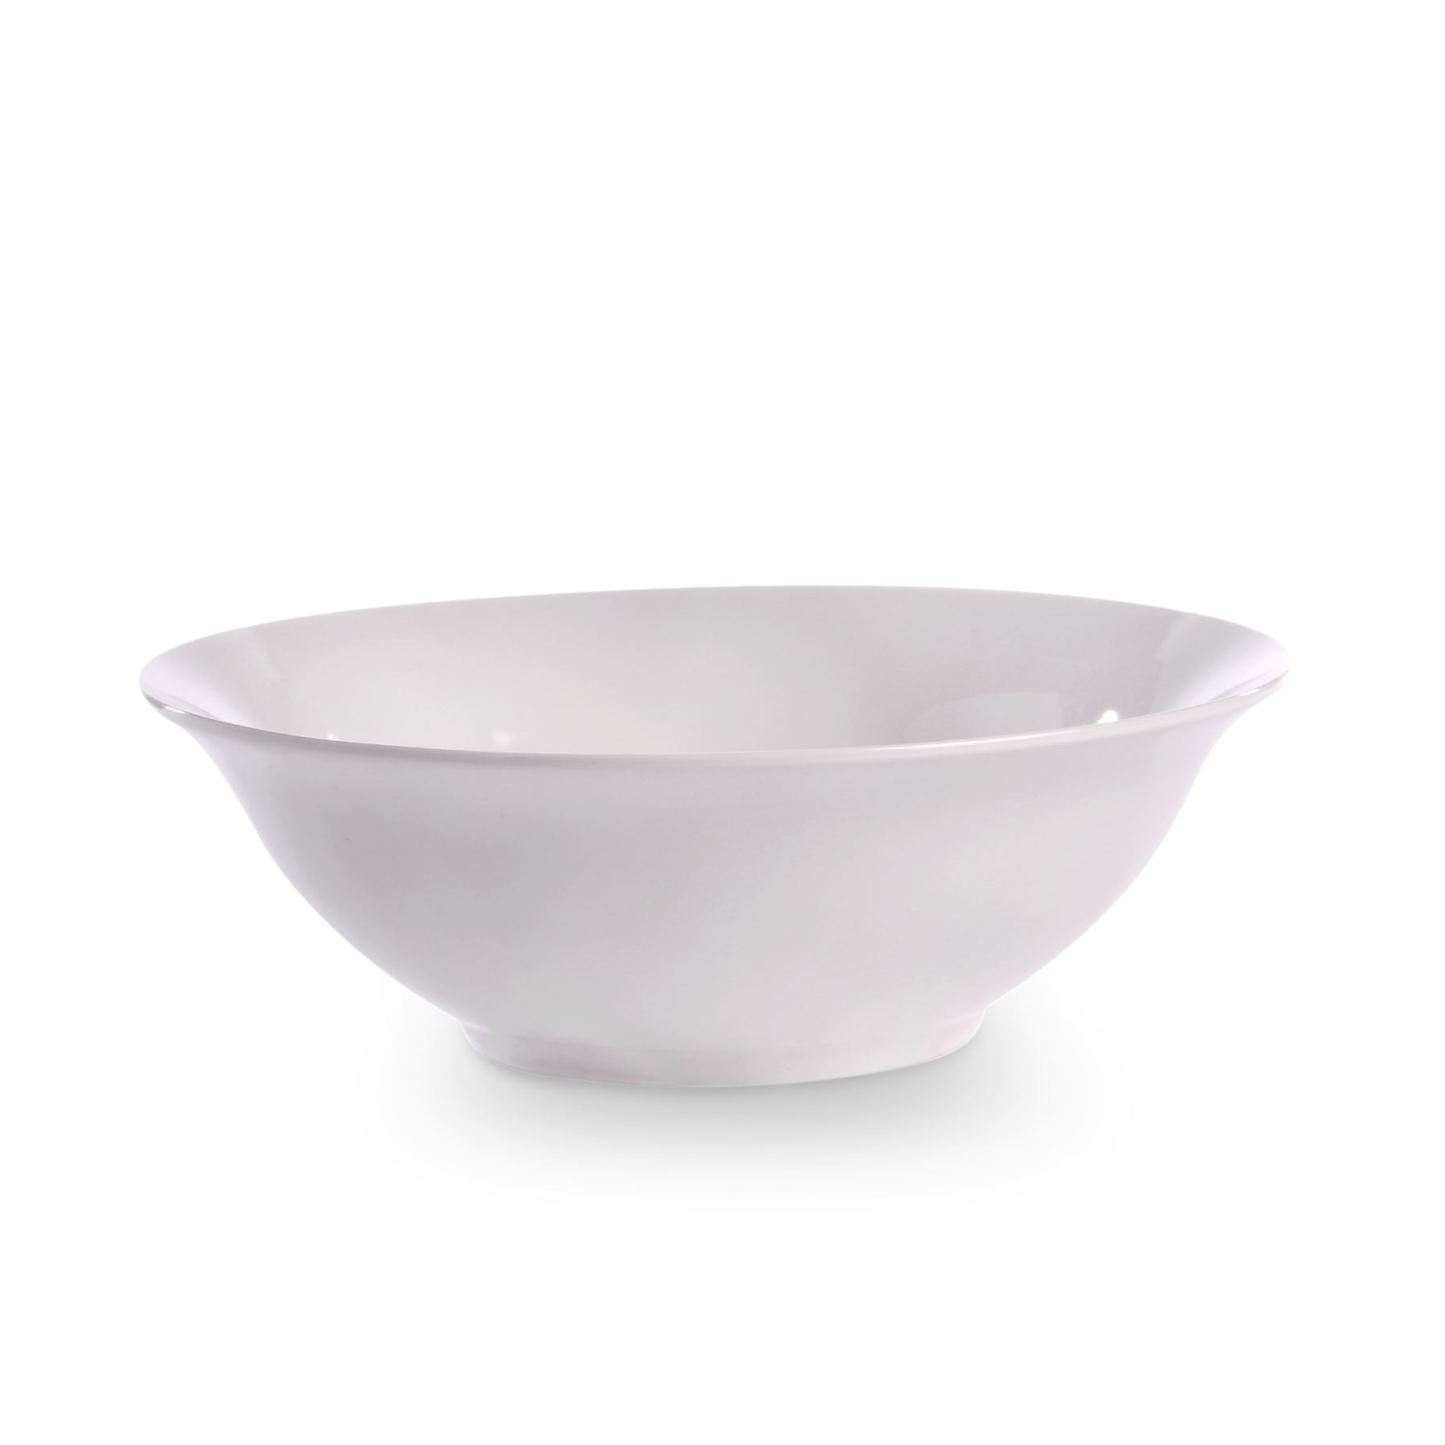 White Serving Bowls - Set of 4 | M&W